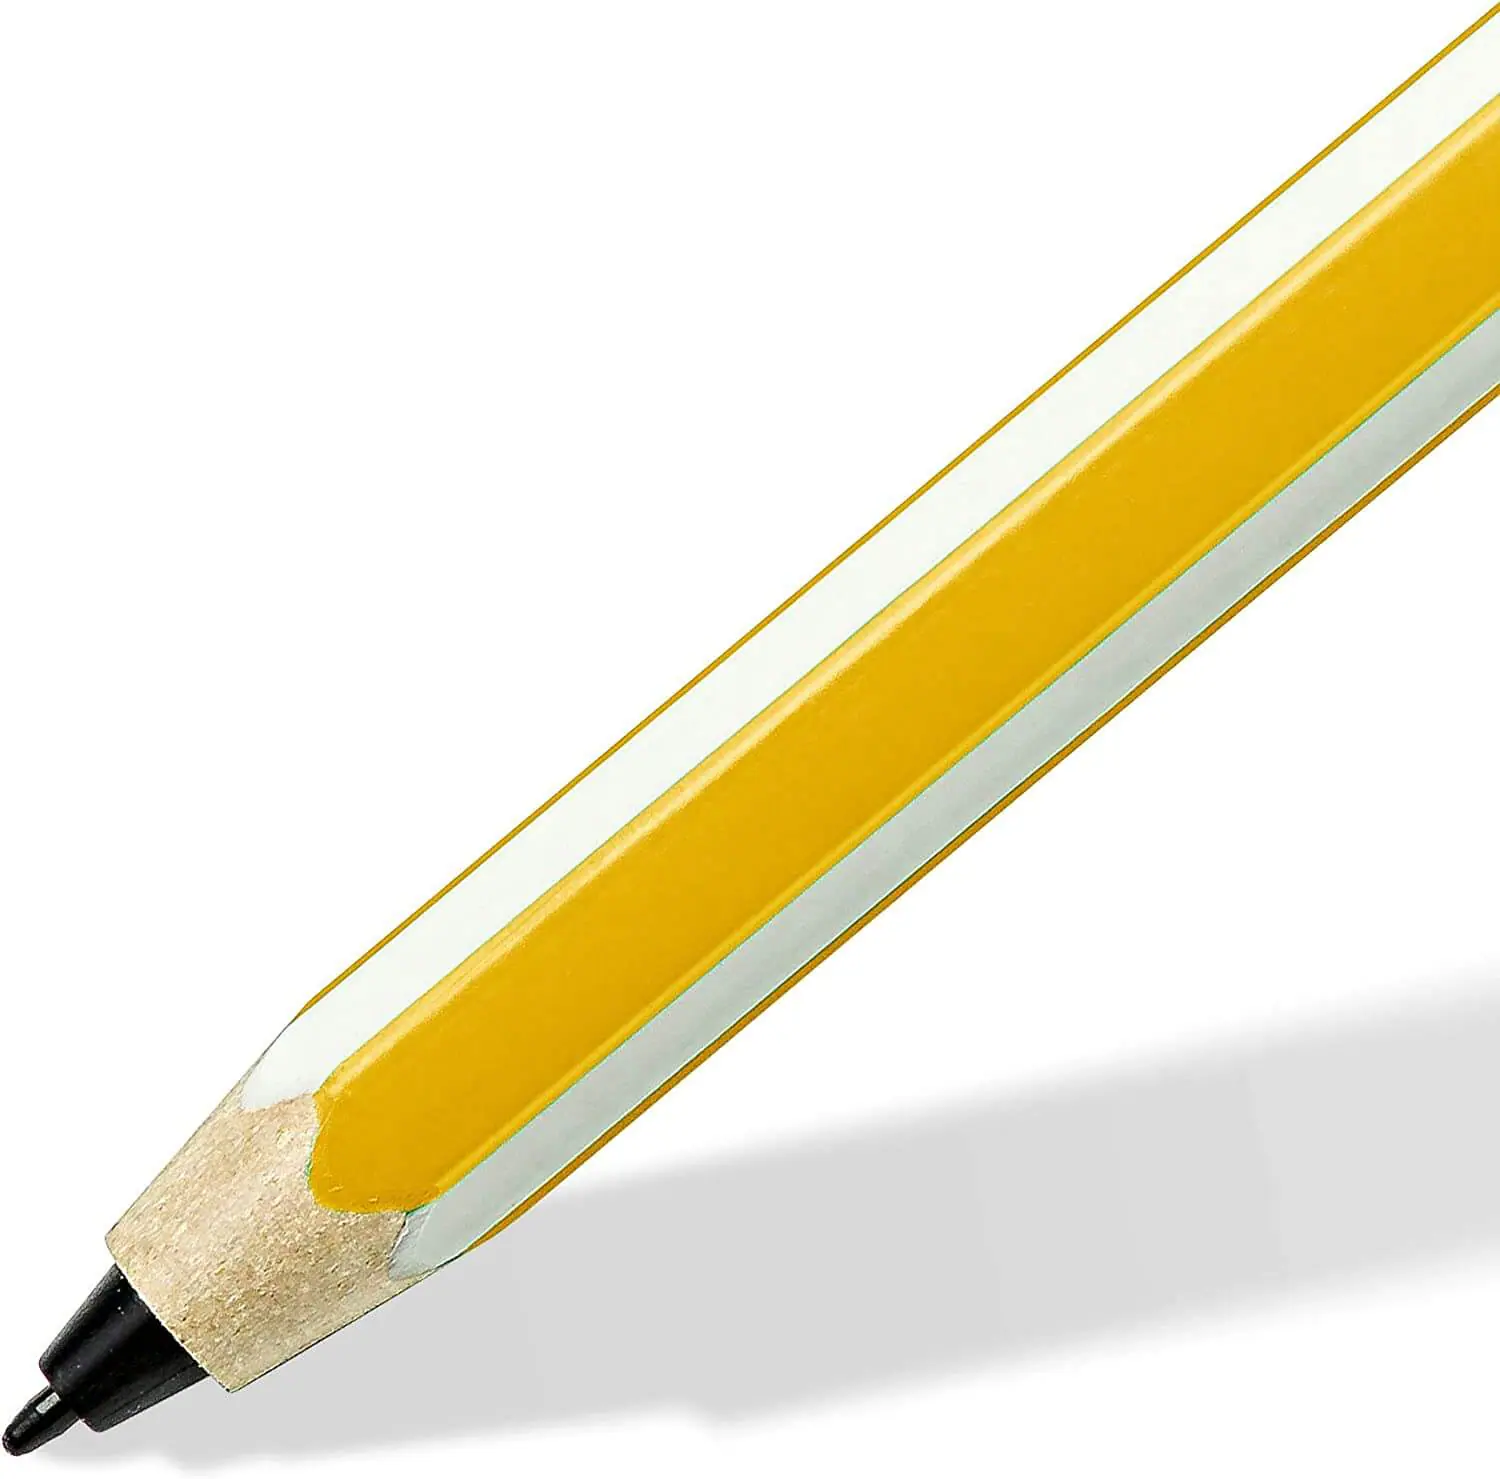 STAEDTLER EMR Digital Pencil for Noris 2023 Stylus - Good e-Reader